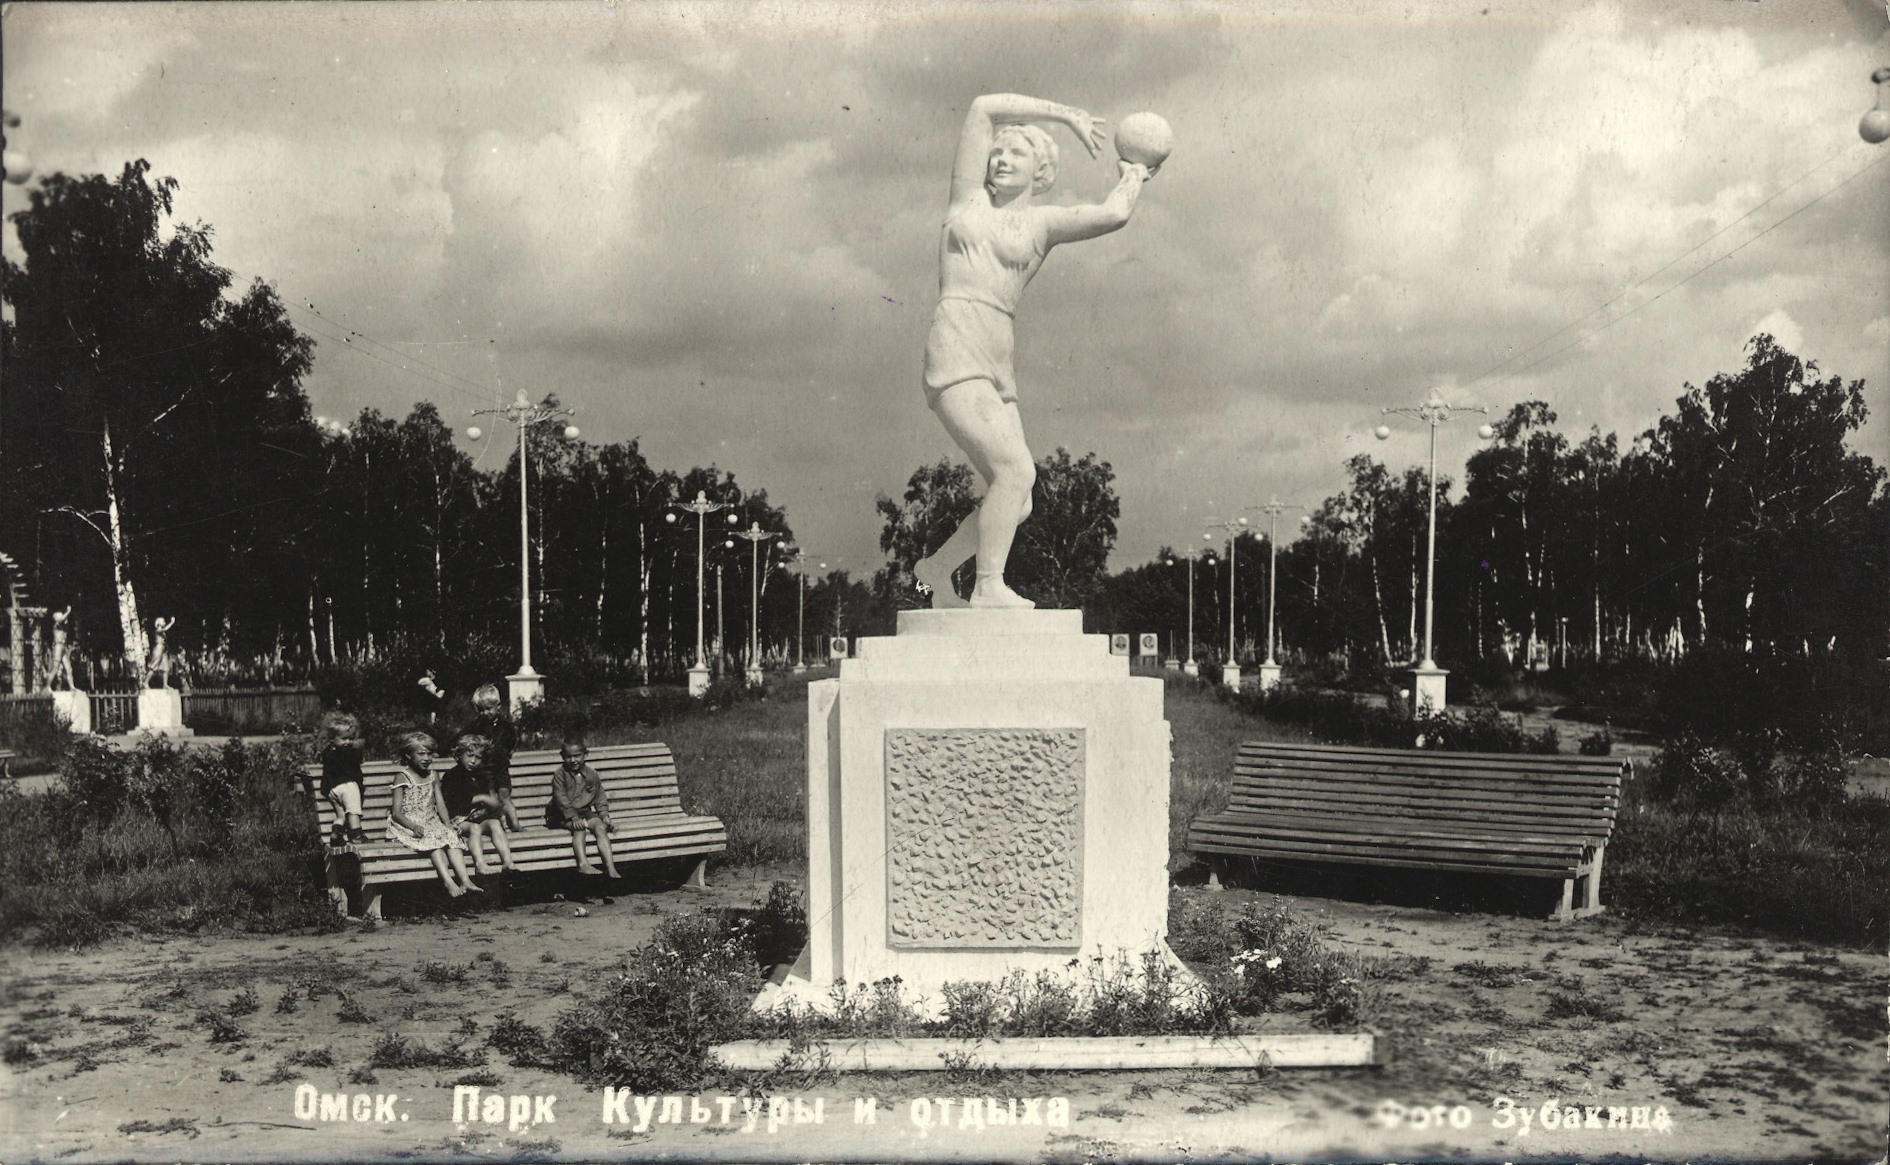 парк советского периода